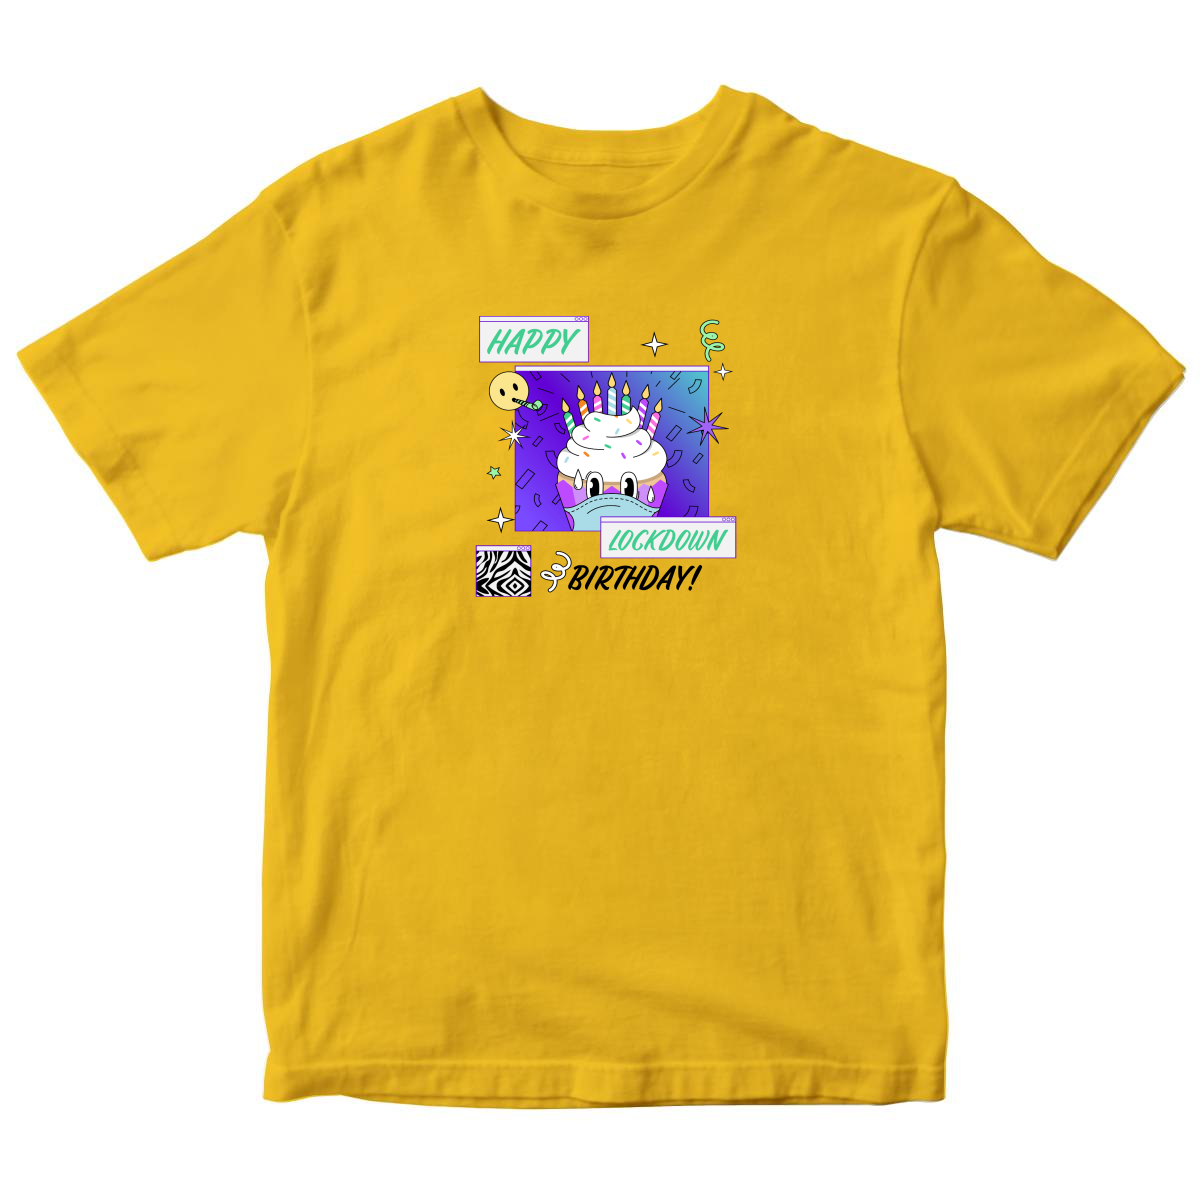 Happy Lock-down Birthday Toddler T-shirt | Yellow